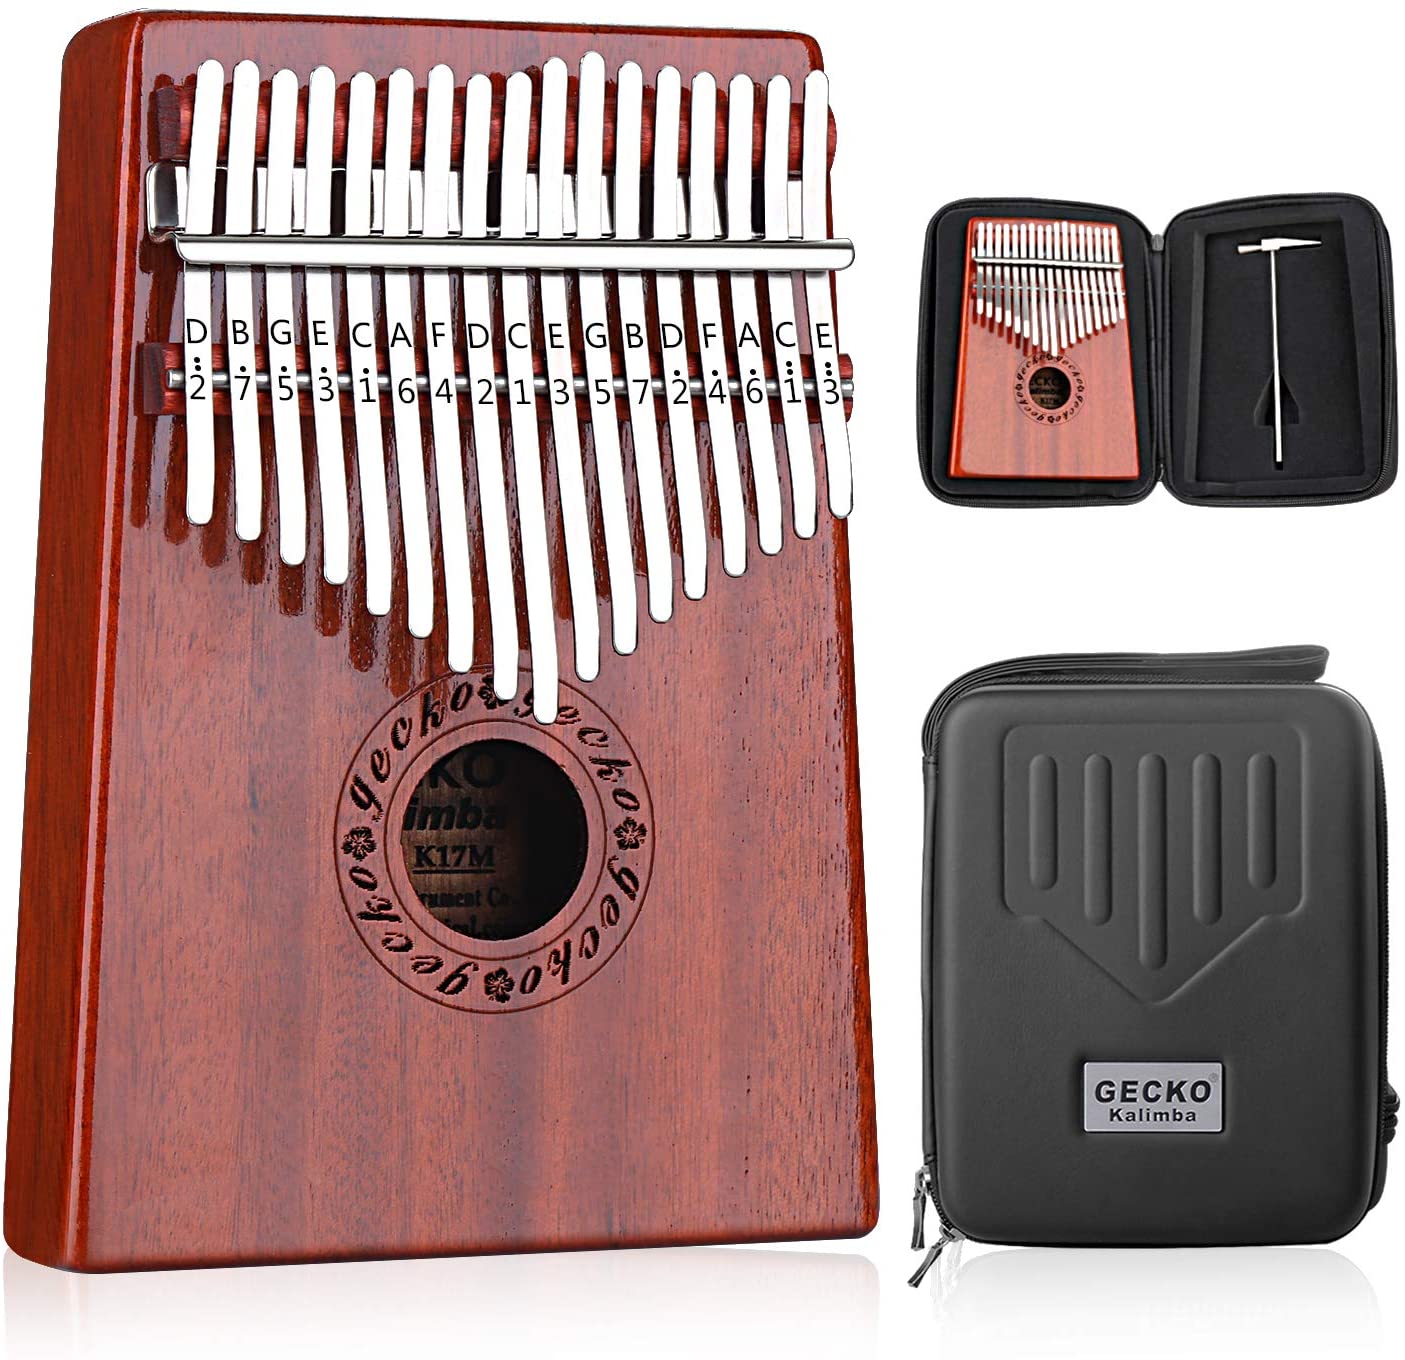 pianoforte con scatola di protezione impermeabile portatile Mbira Sanza pianoforte in legno africano per principianti. 17 tasti strumento musicale per adulti EASTROCK Kalimba 